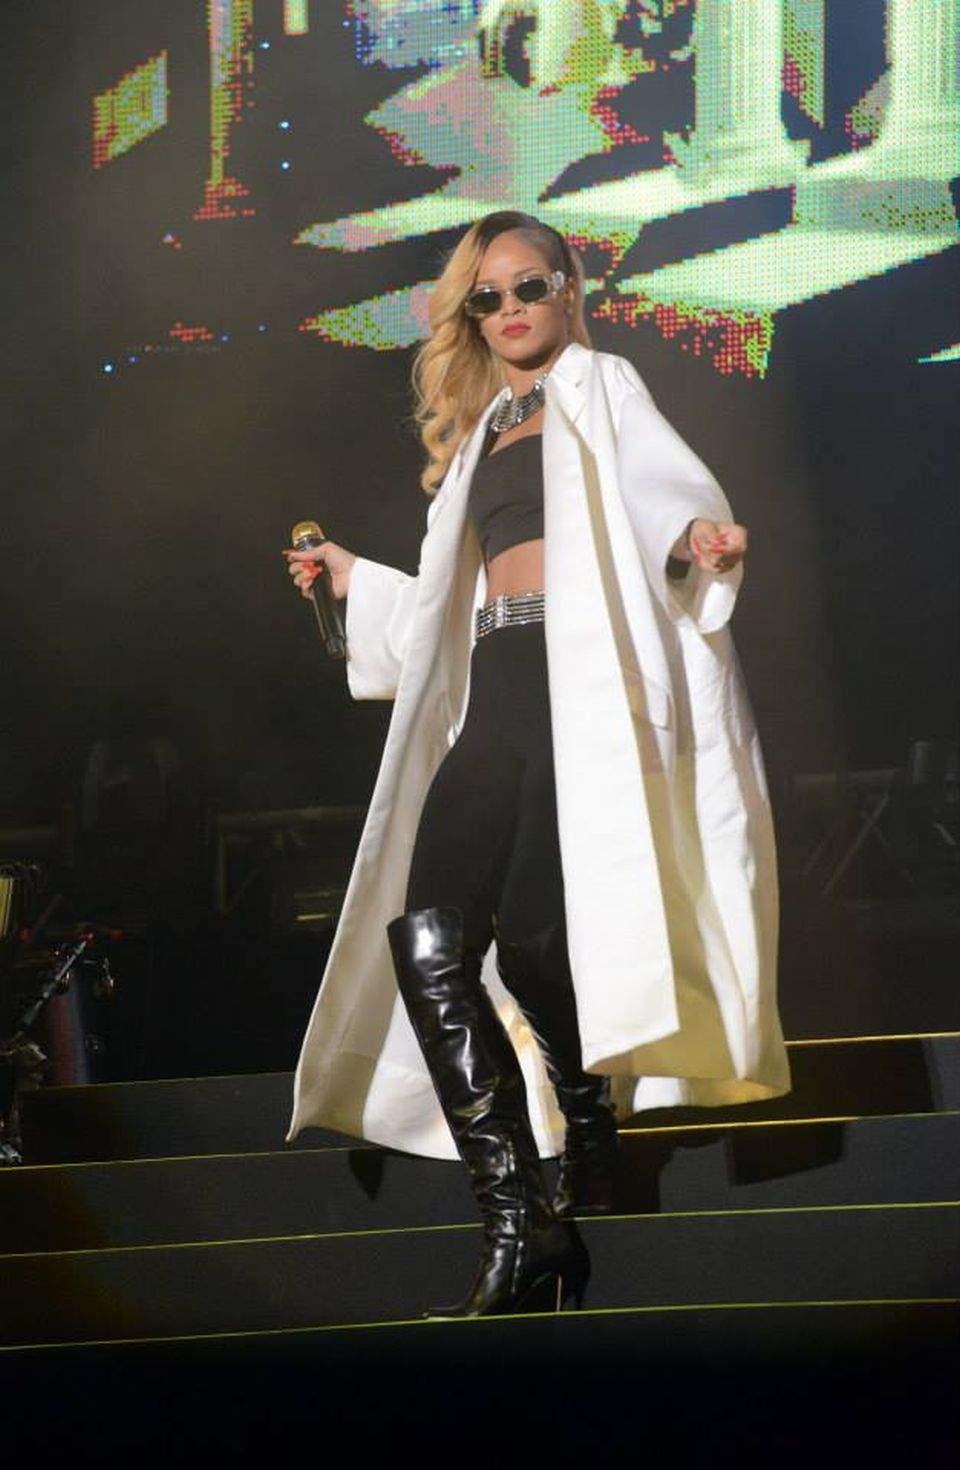 Rihanna, concert de senzaţie la Rabat! Intră să o vezi în acţiune